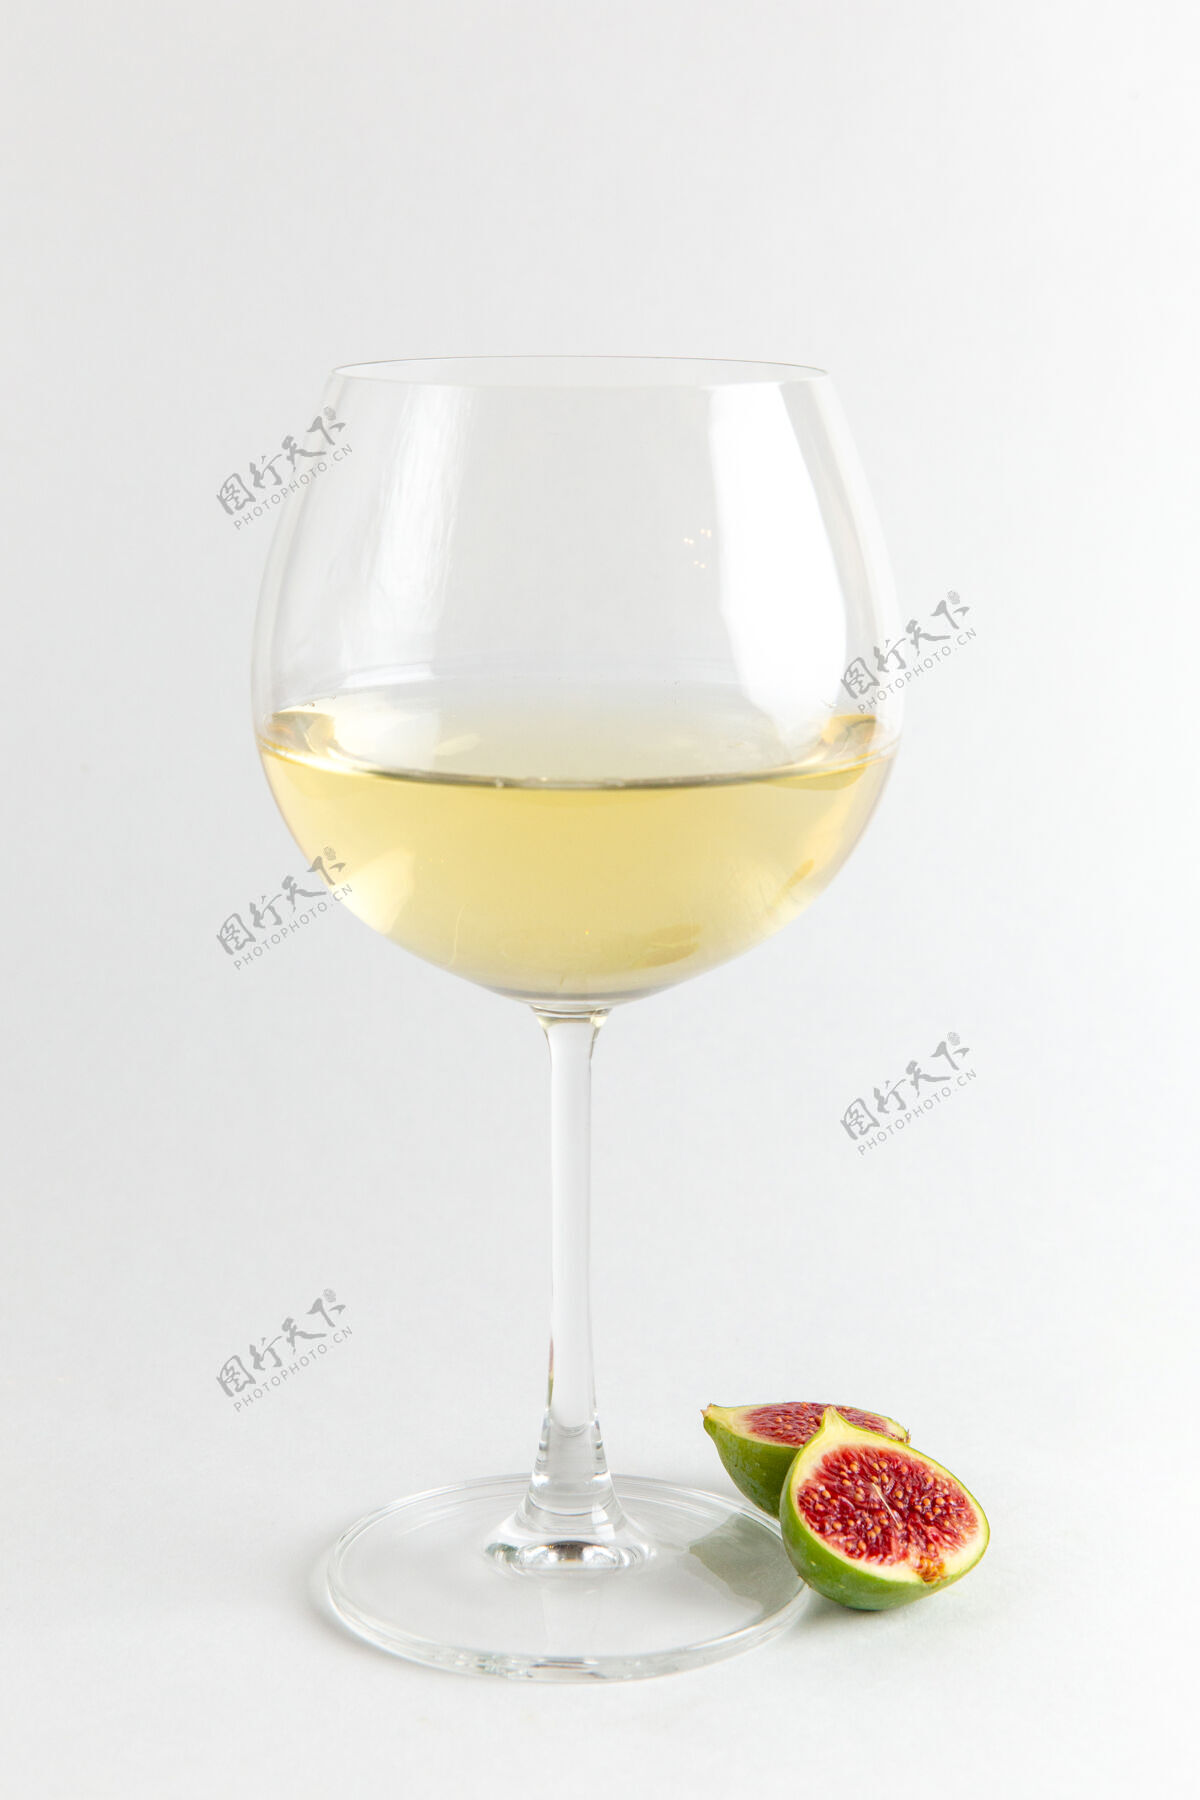 饮料正面图新鲜无花果片配上一杯白酒桌水果新鲜维生素树植物照片酒精吧新鲜玻璃杯无花果